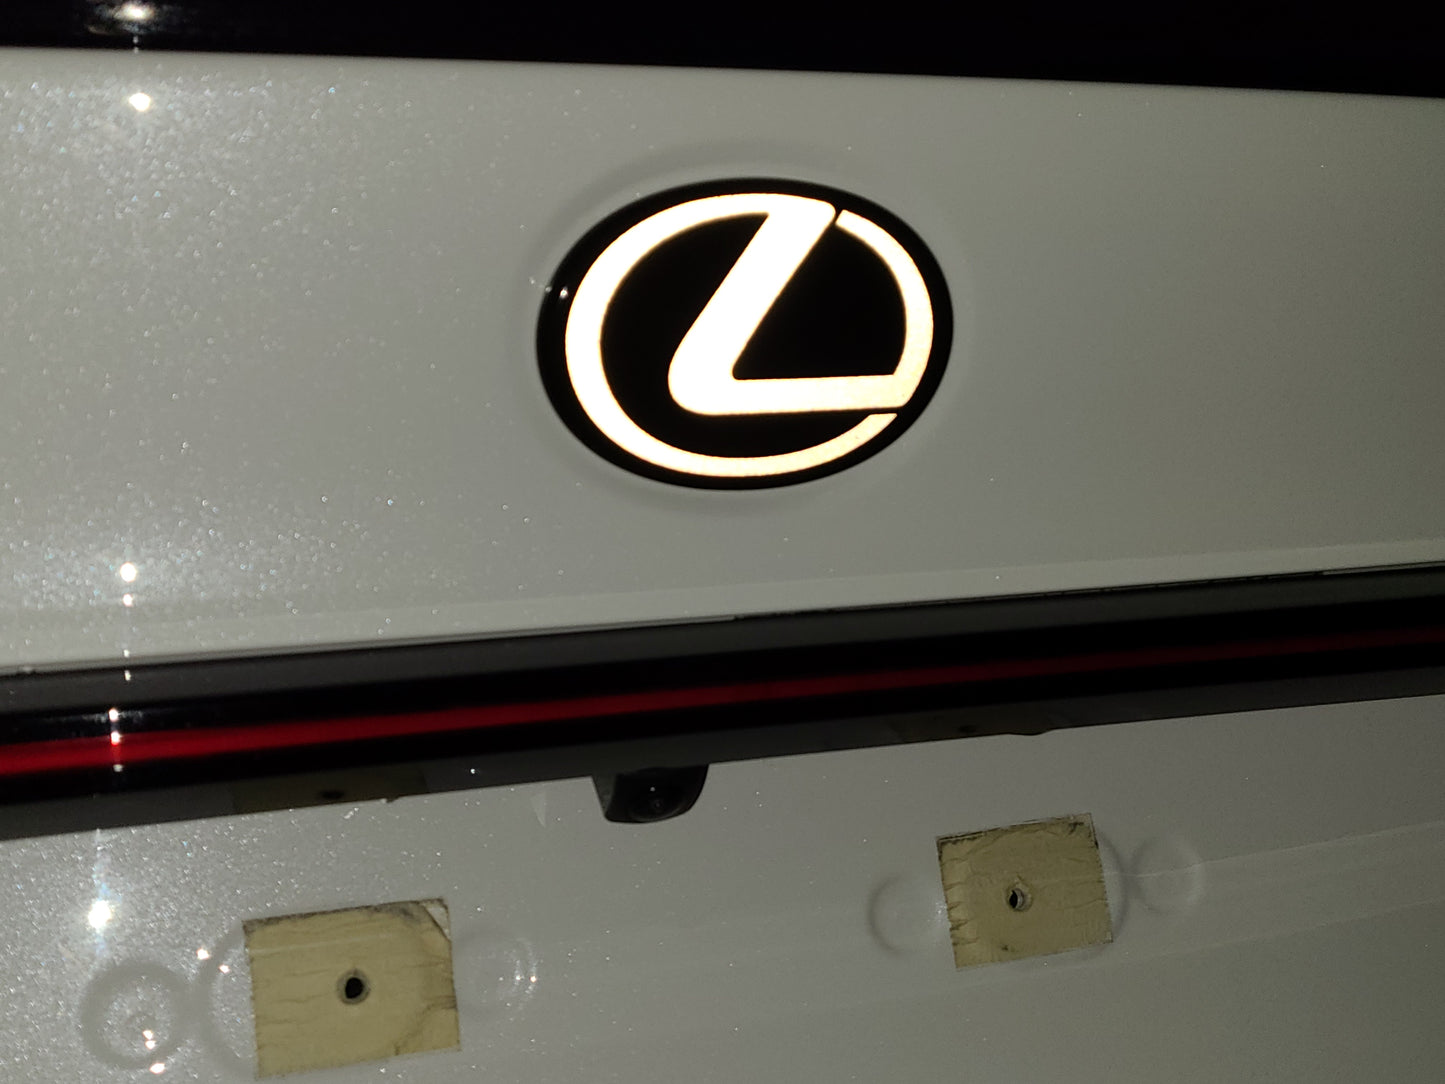 Reflective Lexus Rear Emblem Vinyl Overlay Decal